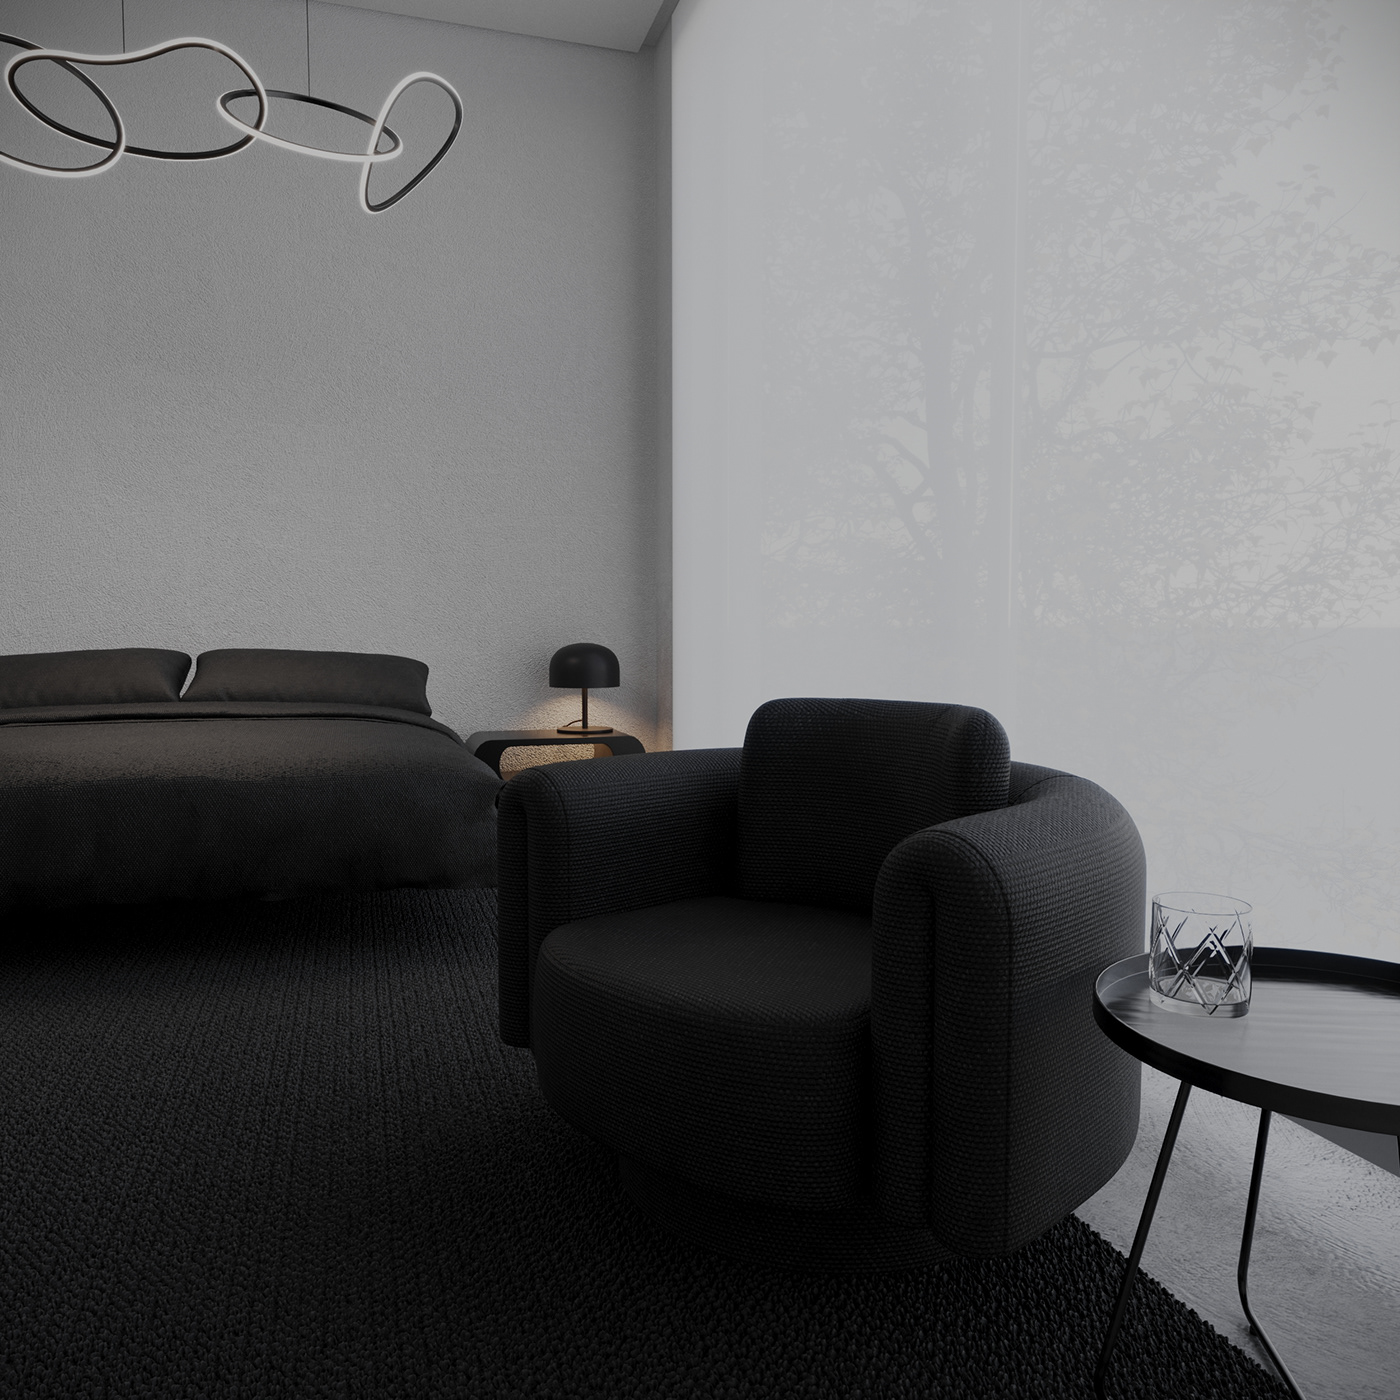 indoor architecture interior design  visualization Render 3ds max modern archviz